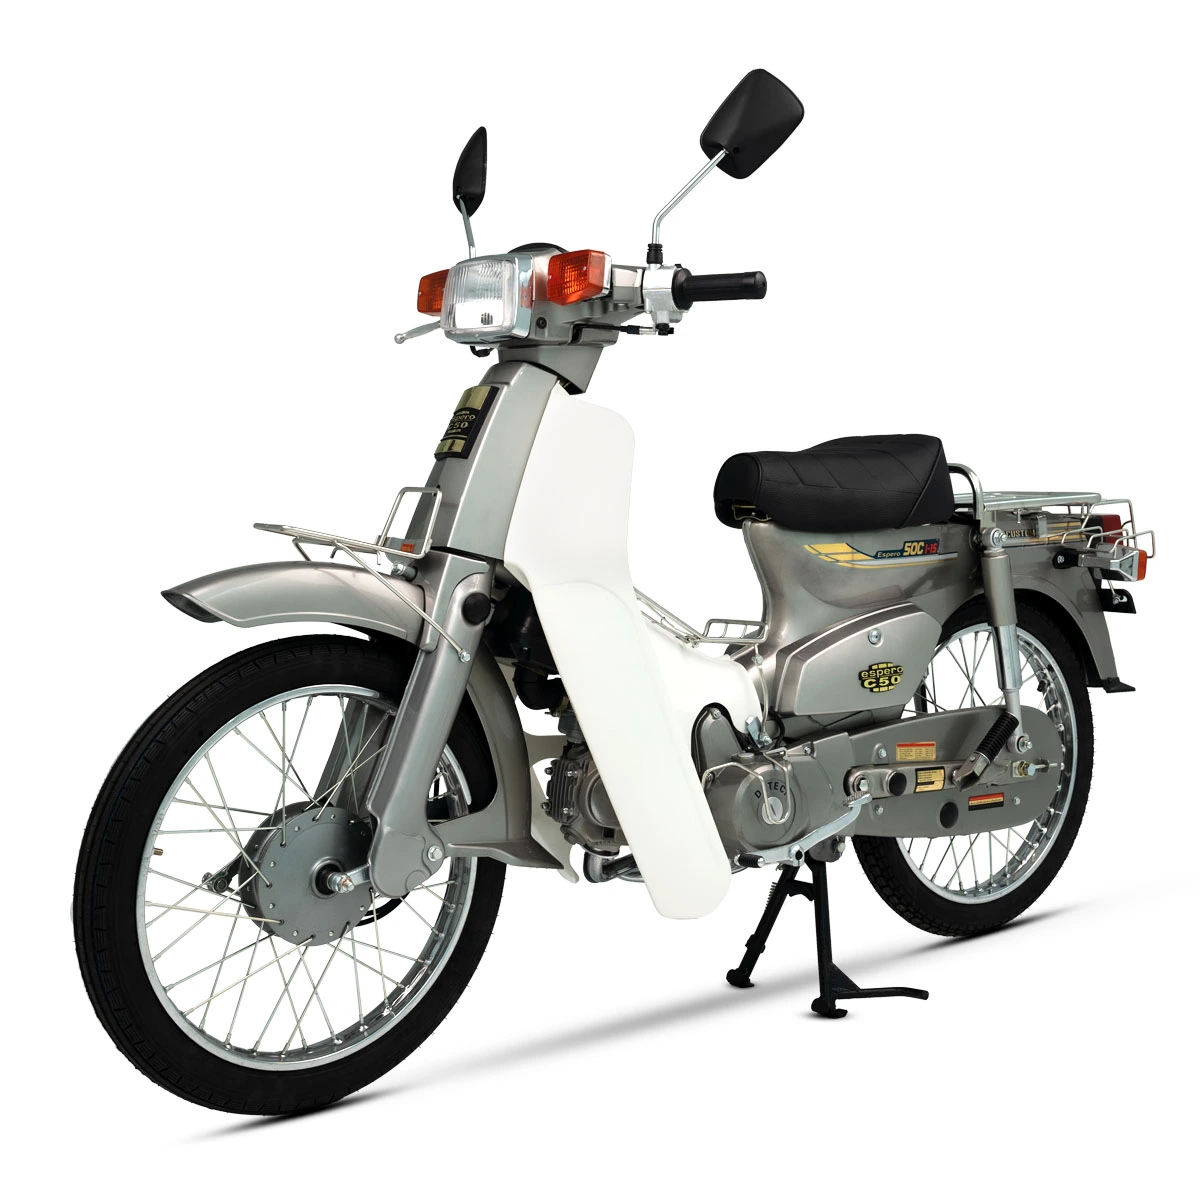 Tôi cần bán xe máy Honda Cub 82 50cc  Hà Nội  Xe máy  Chuyenbanxecom